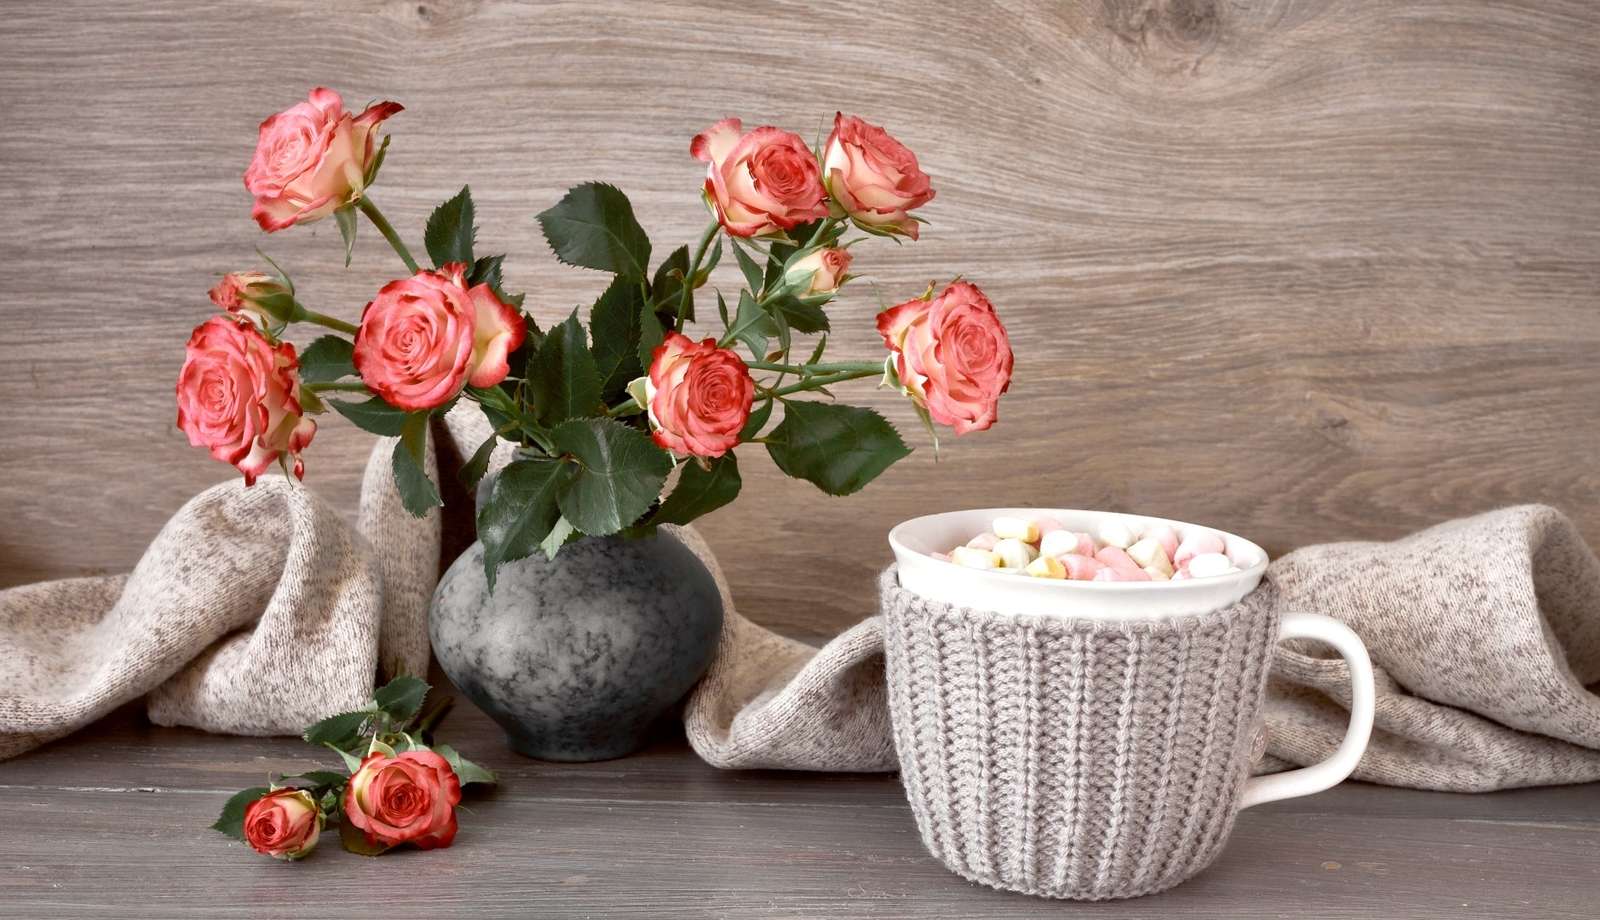 Розы в вазе рядом с кружкой с зефиром онлайн-пазл